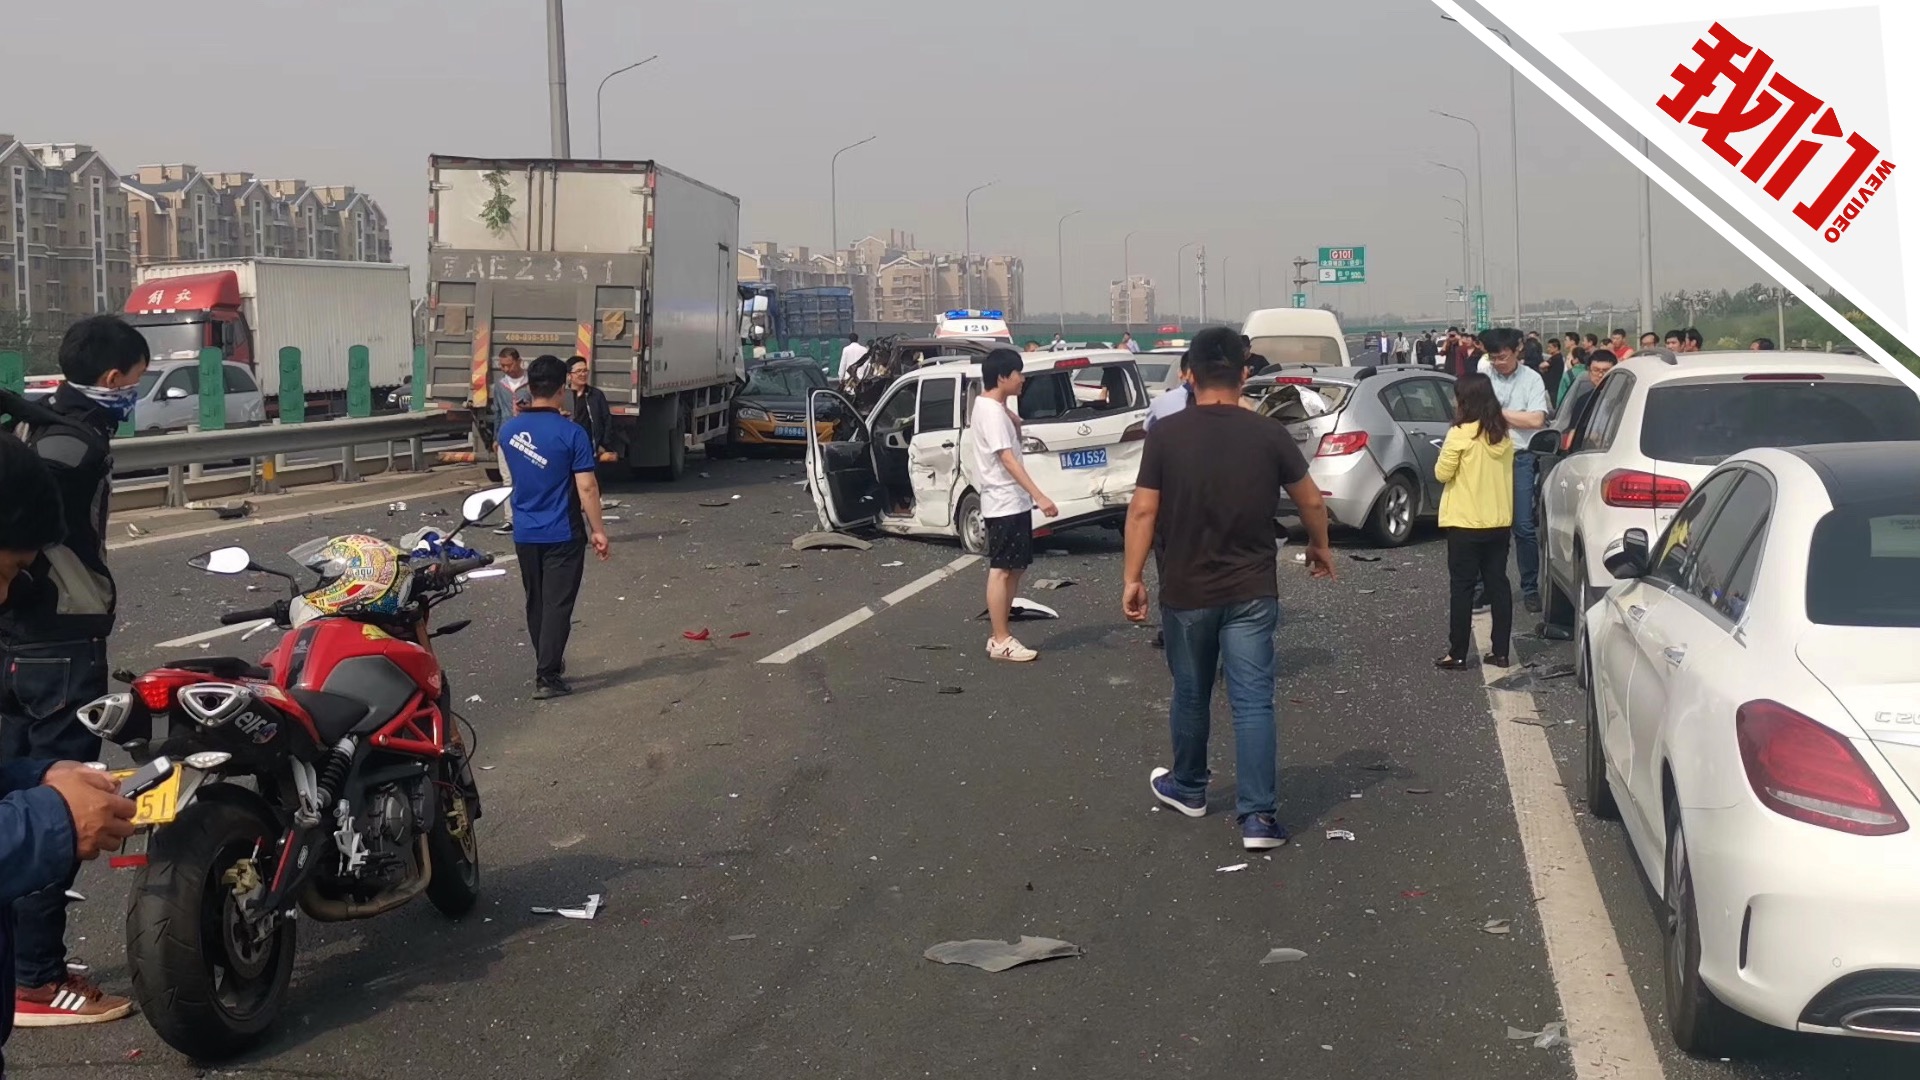 淄博柳泉路一路口发生交通事故 4车受损1人受伤_ 淄博新闻_鲁中网